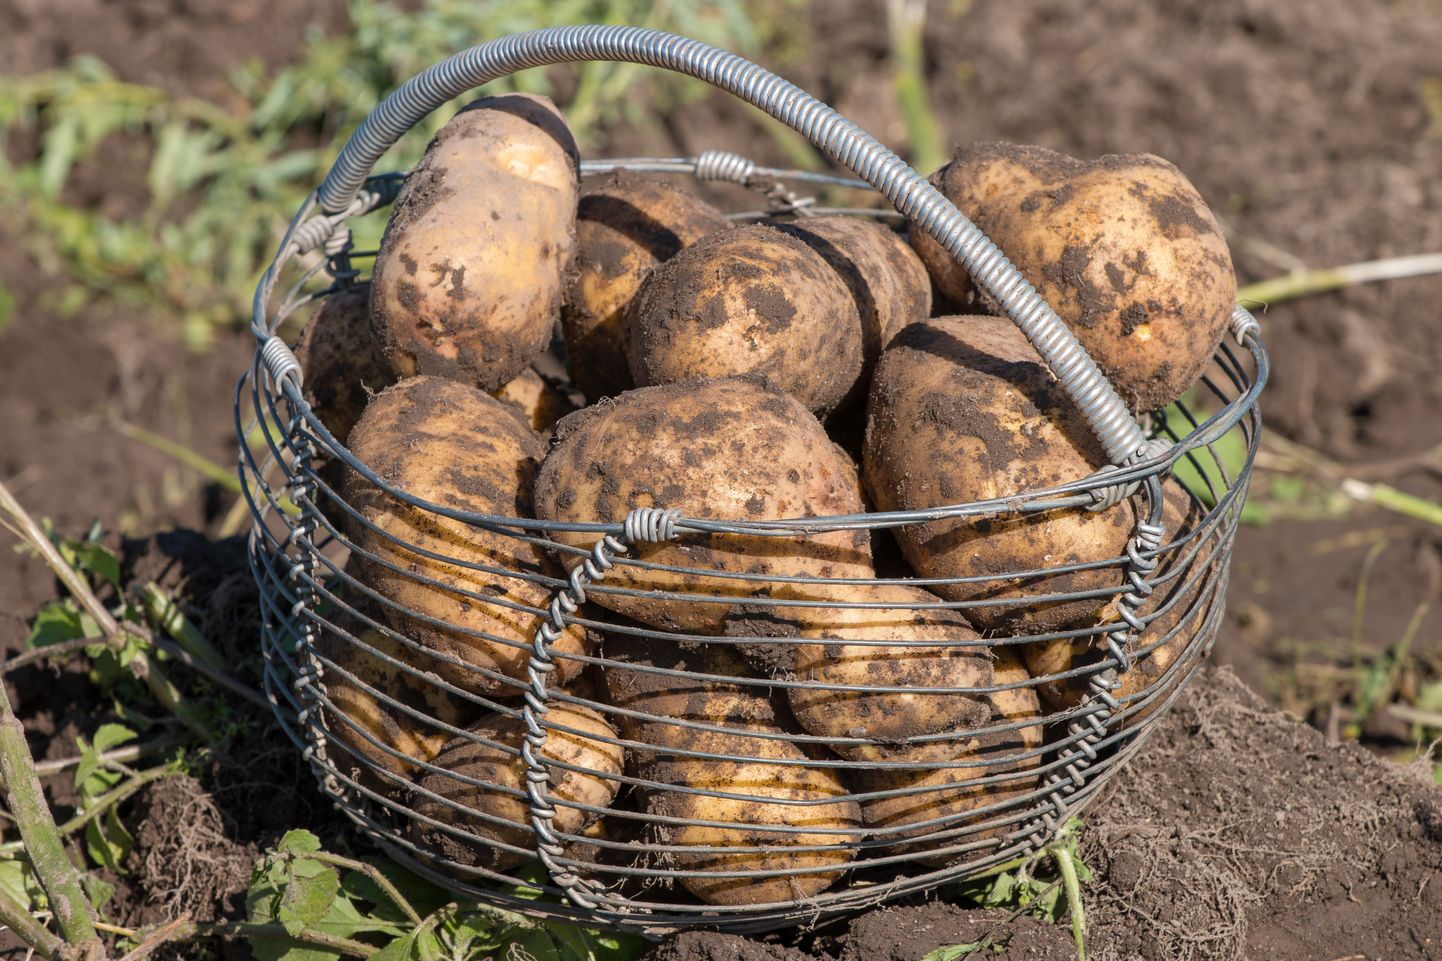 Kindlustustoetust lubatakse ka kartulikasvajatele.